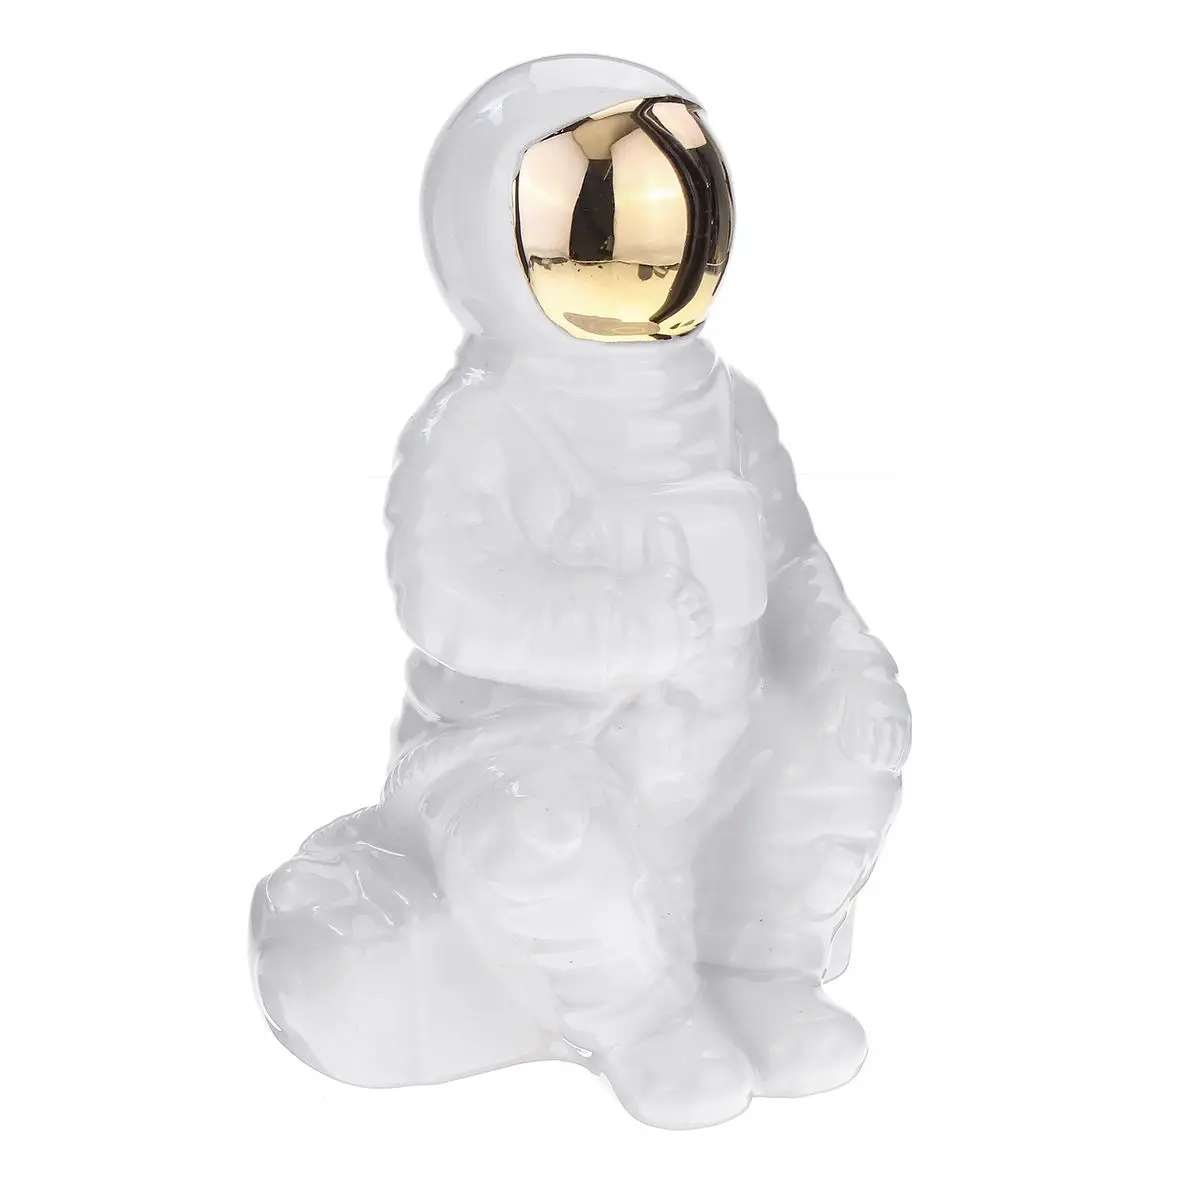 Космическая фигурка человека астронавт фигурки-статуэтки копилка для монет цент, Пенни детская игрушка alcancia детская игрушка - Цвет: white sit